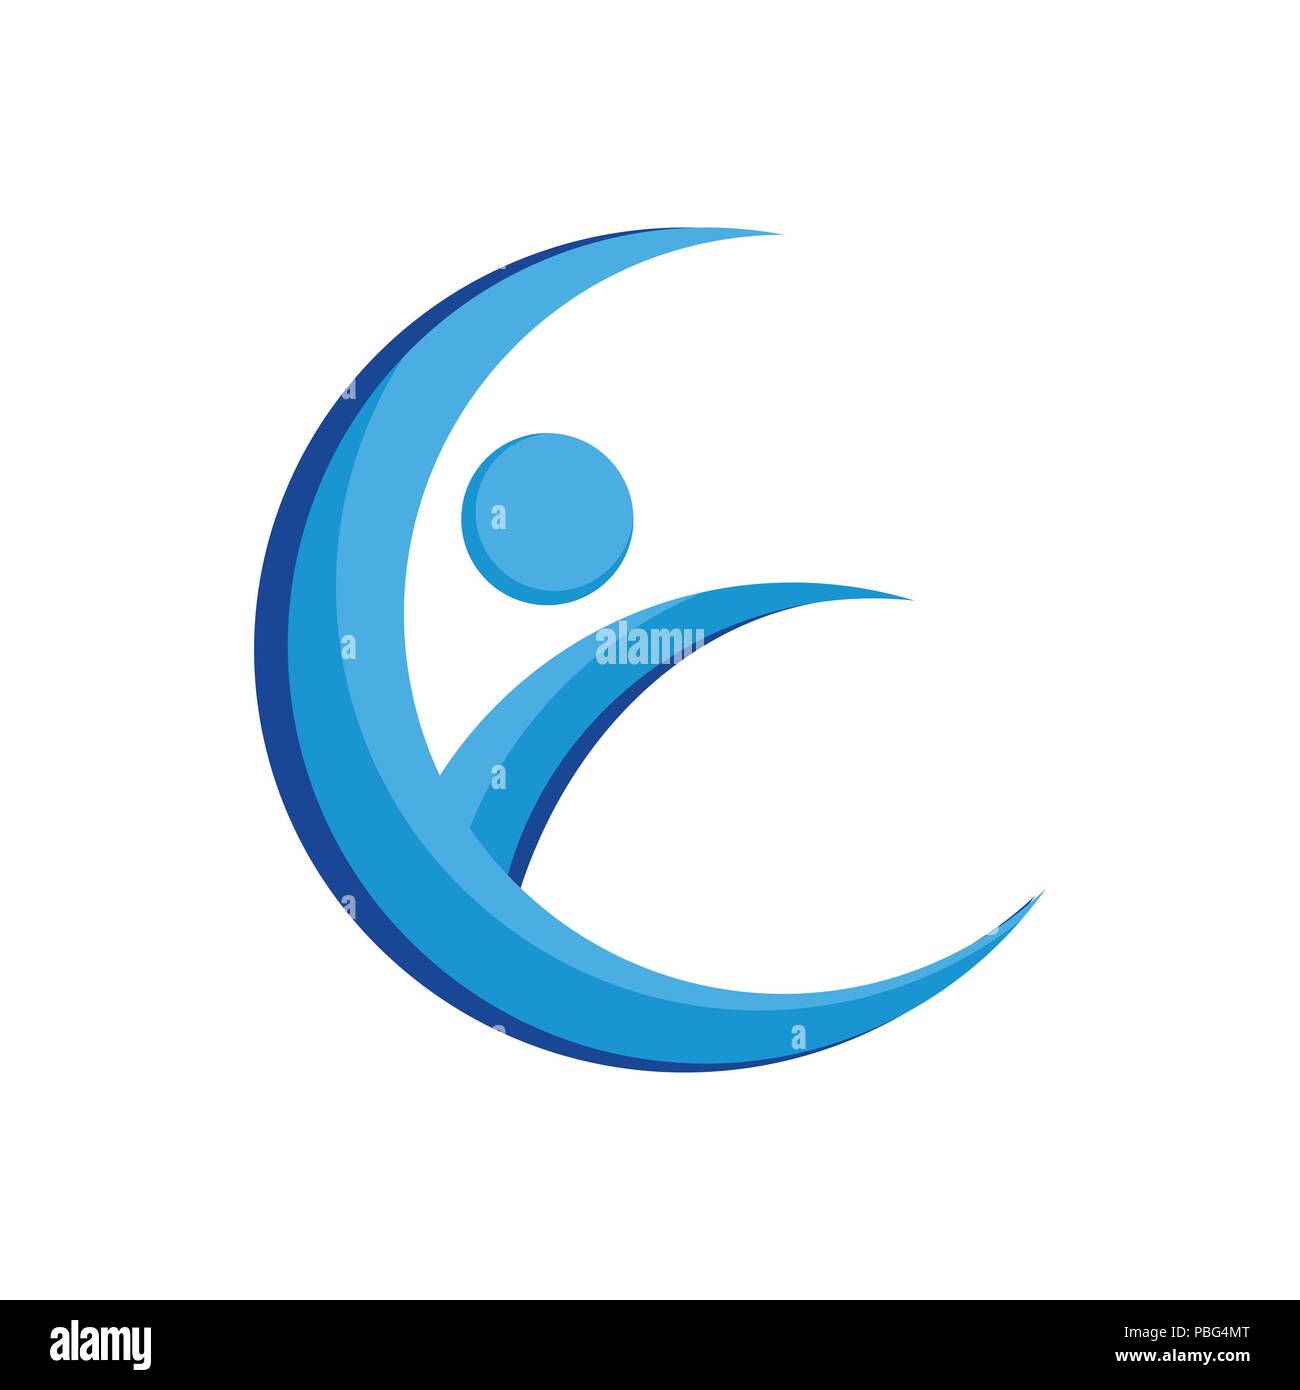 E iniziale Lettermark Crescent Swoosh simbolo vettore Logo grafico del modello di progettazione Illustrazione Vettoriale